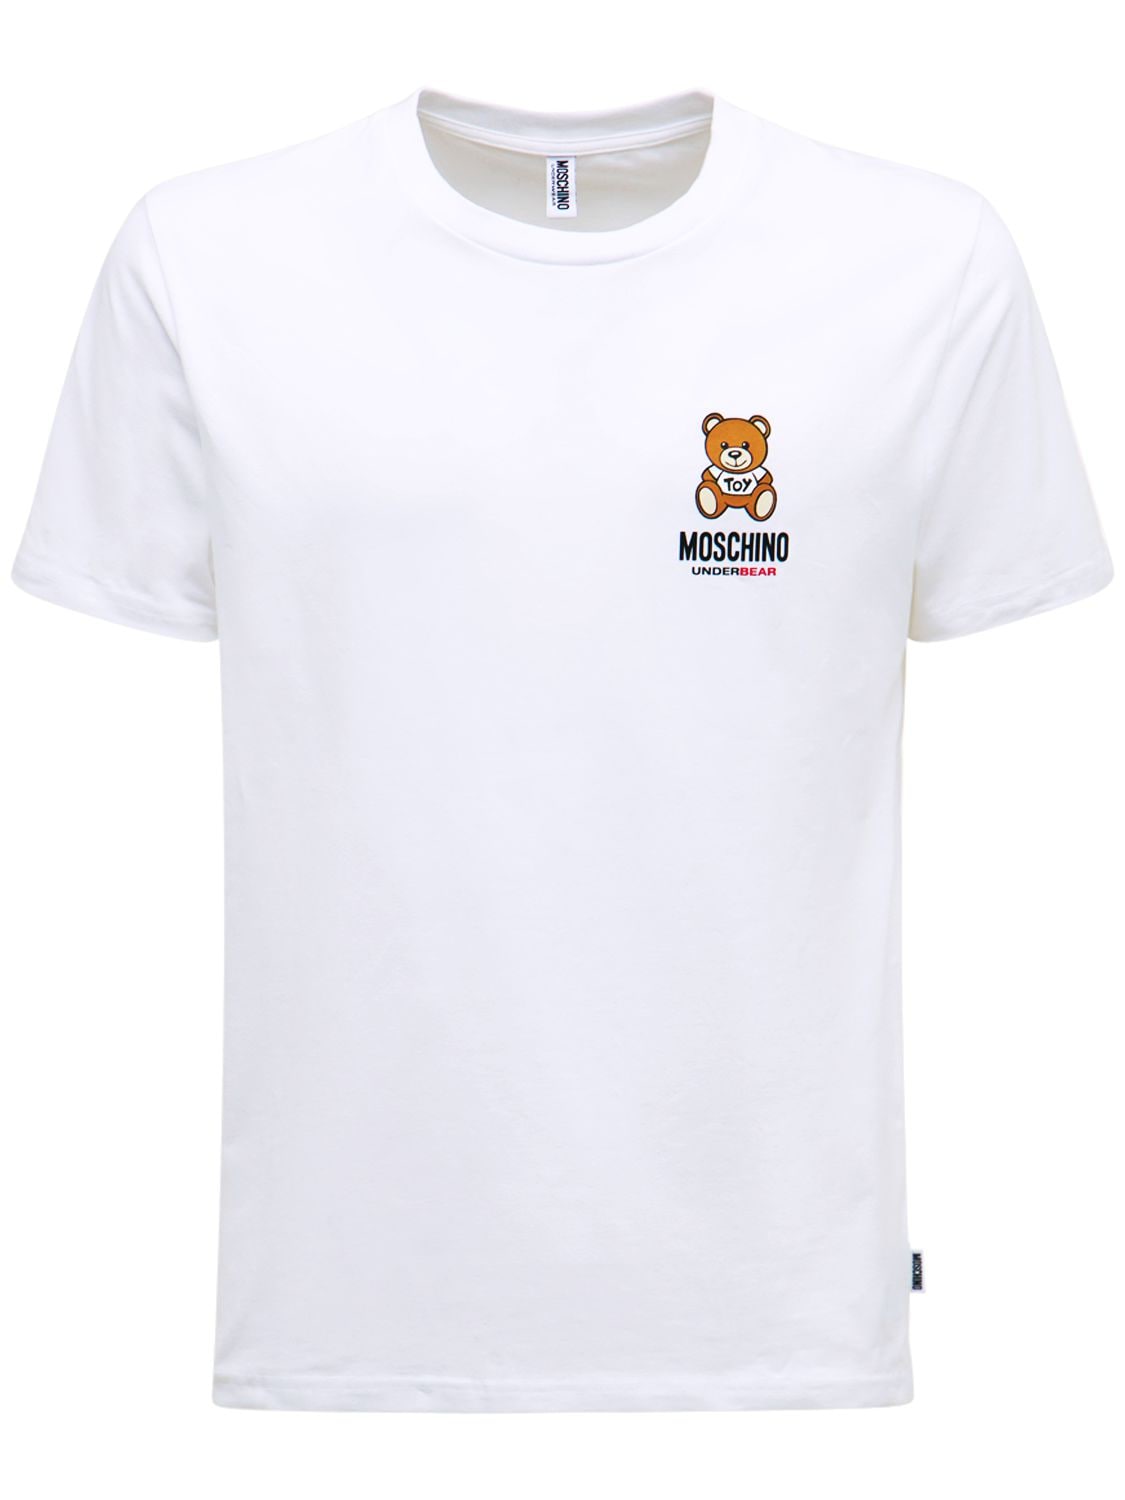 MOSCHINO UNDERWEAR Teddy Print Cotton Jersey T-shirt